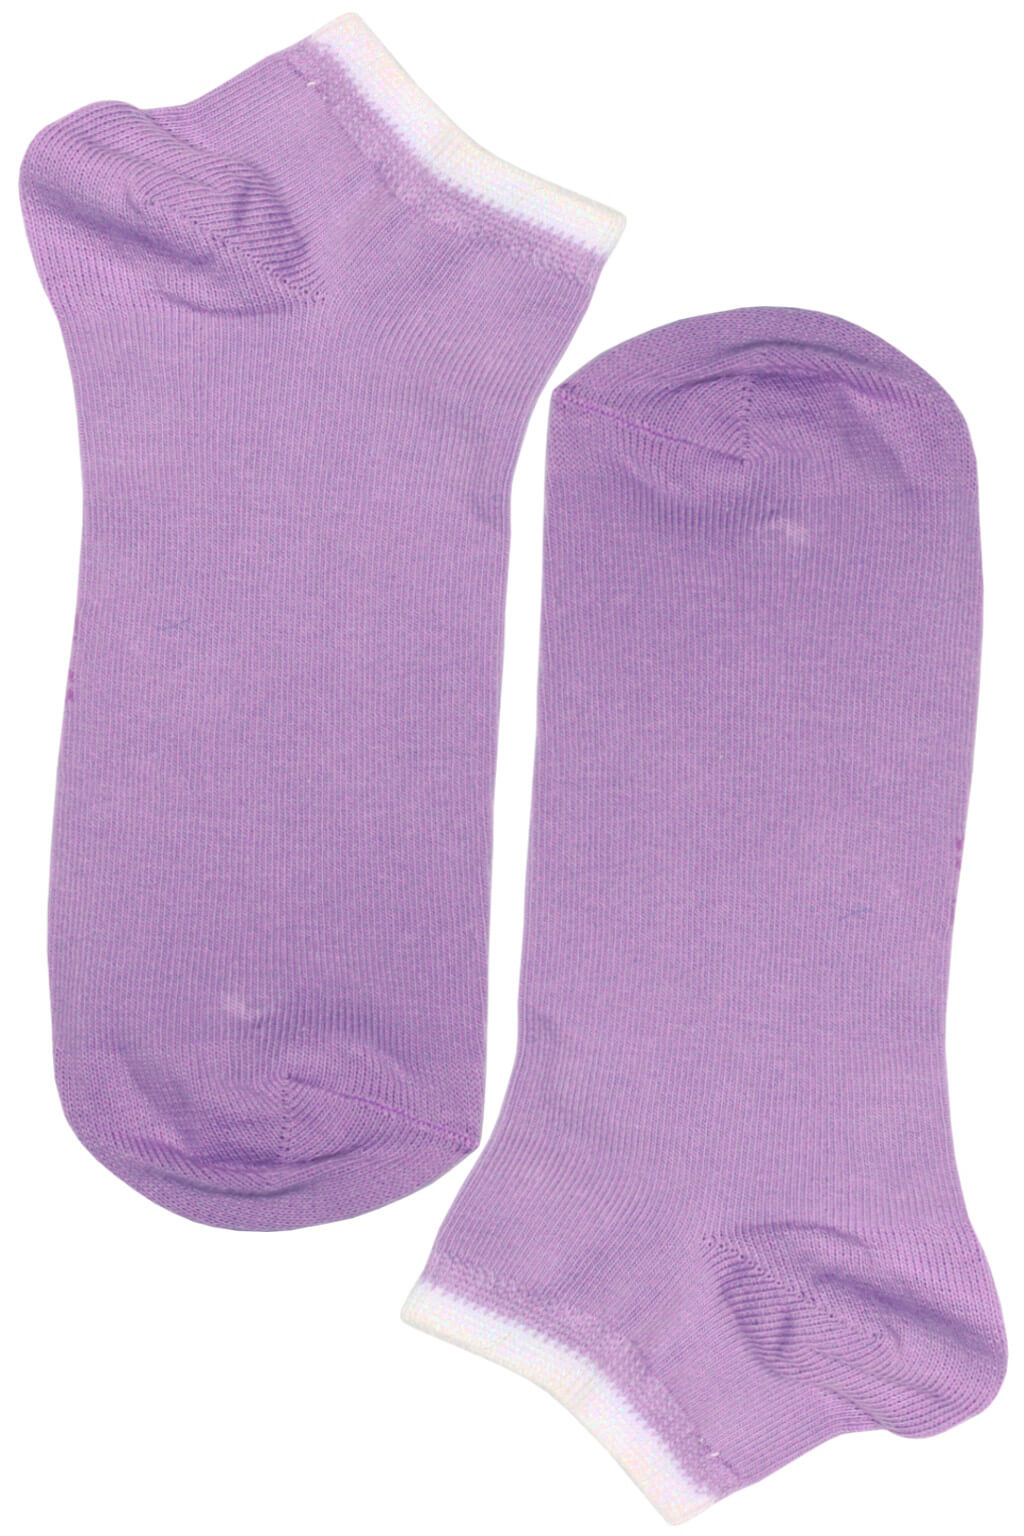 Bellinda ponožky - bavlněné dámské kotníčkové 39-42 světle fialová